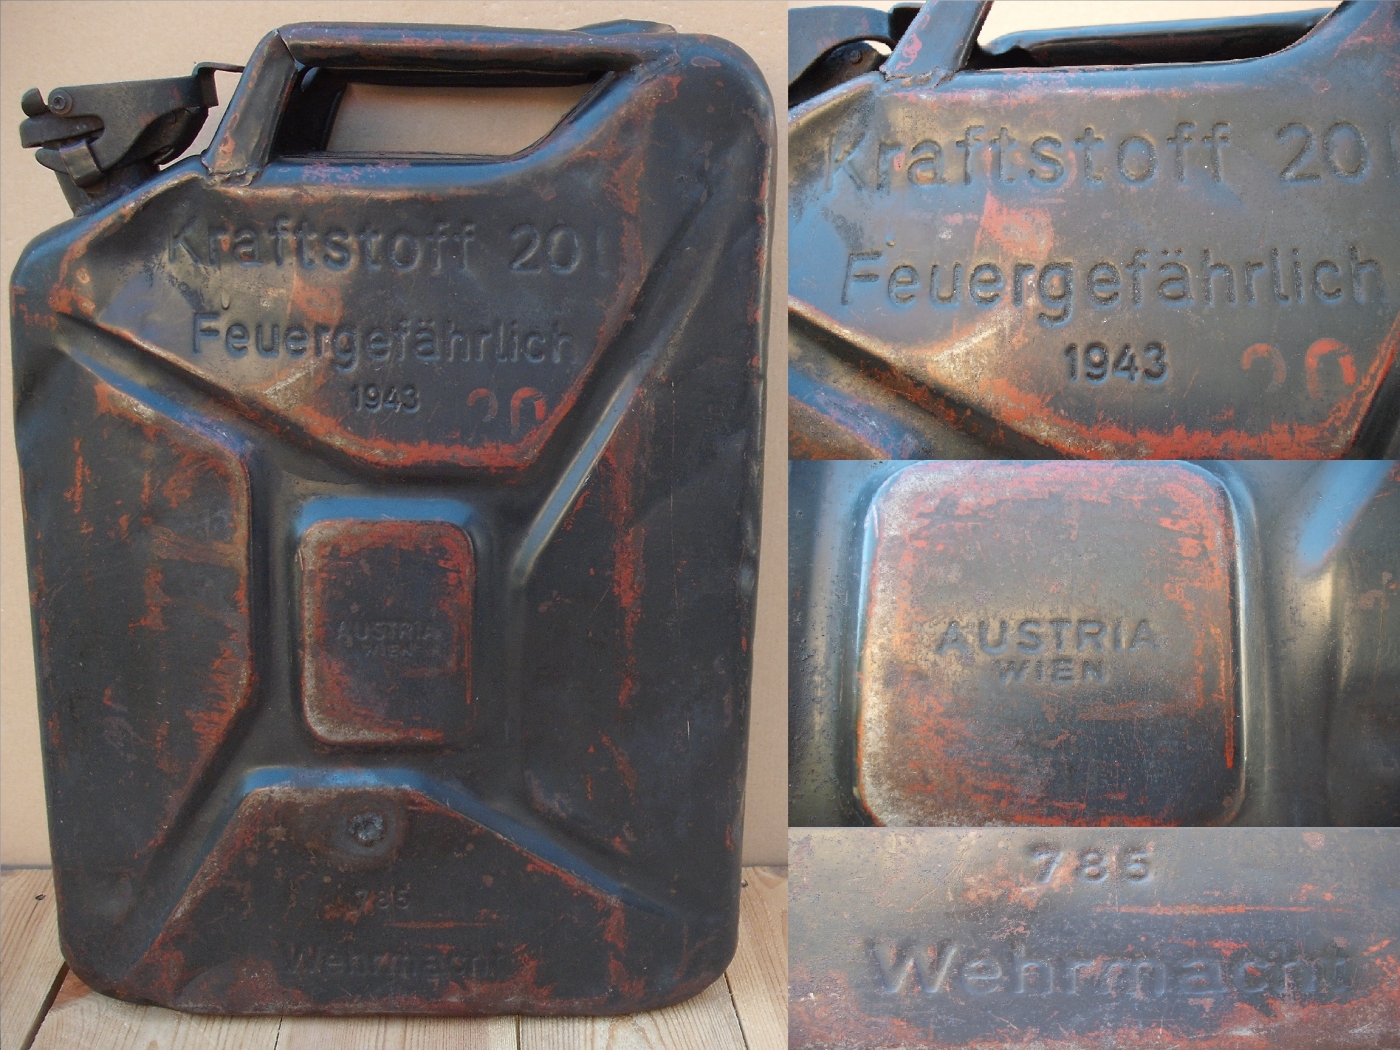 Wehrmacht 20 l-es üzemanyagos kanna: Made in Austria